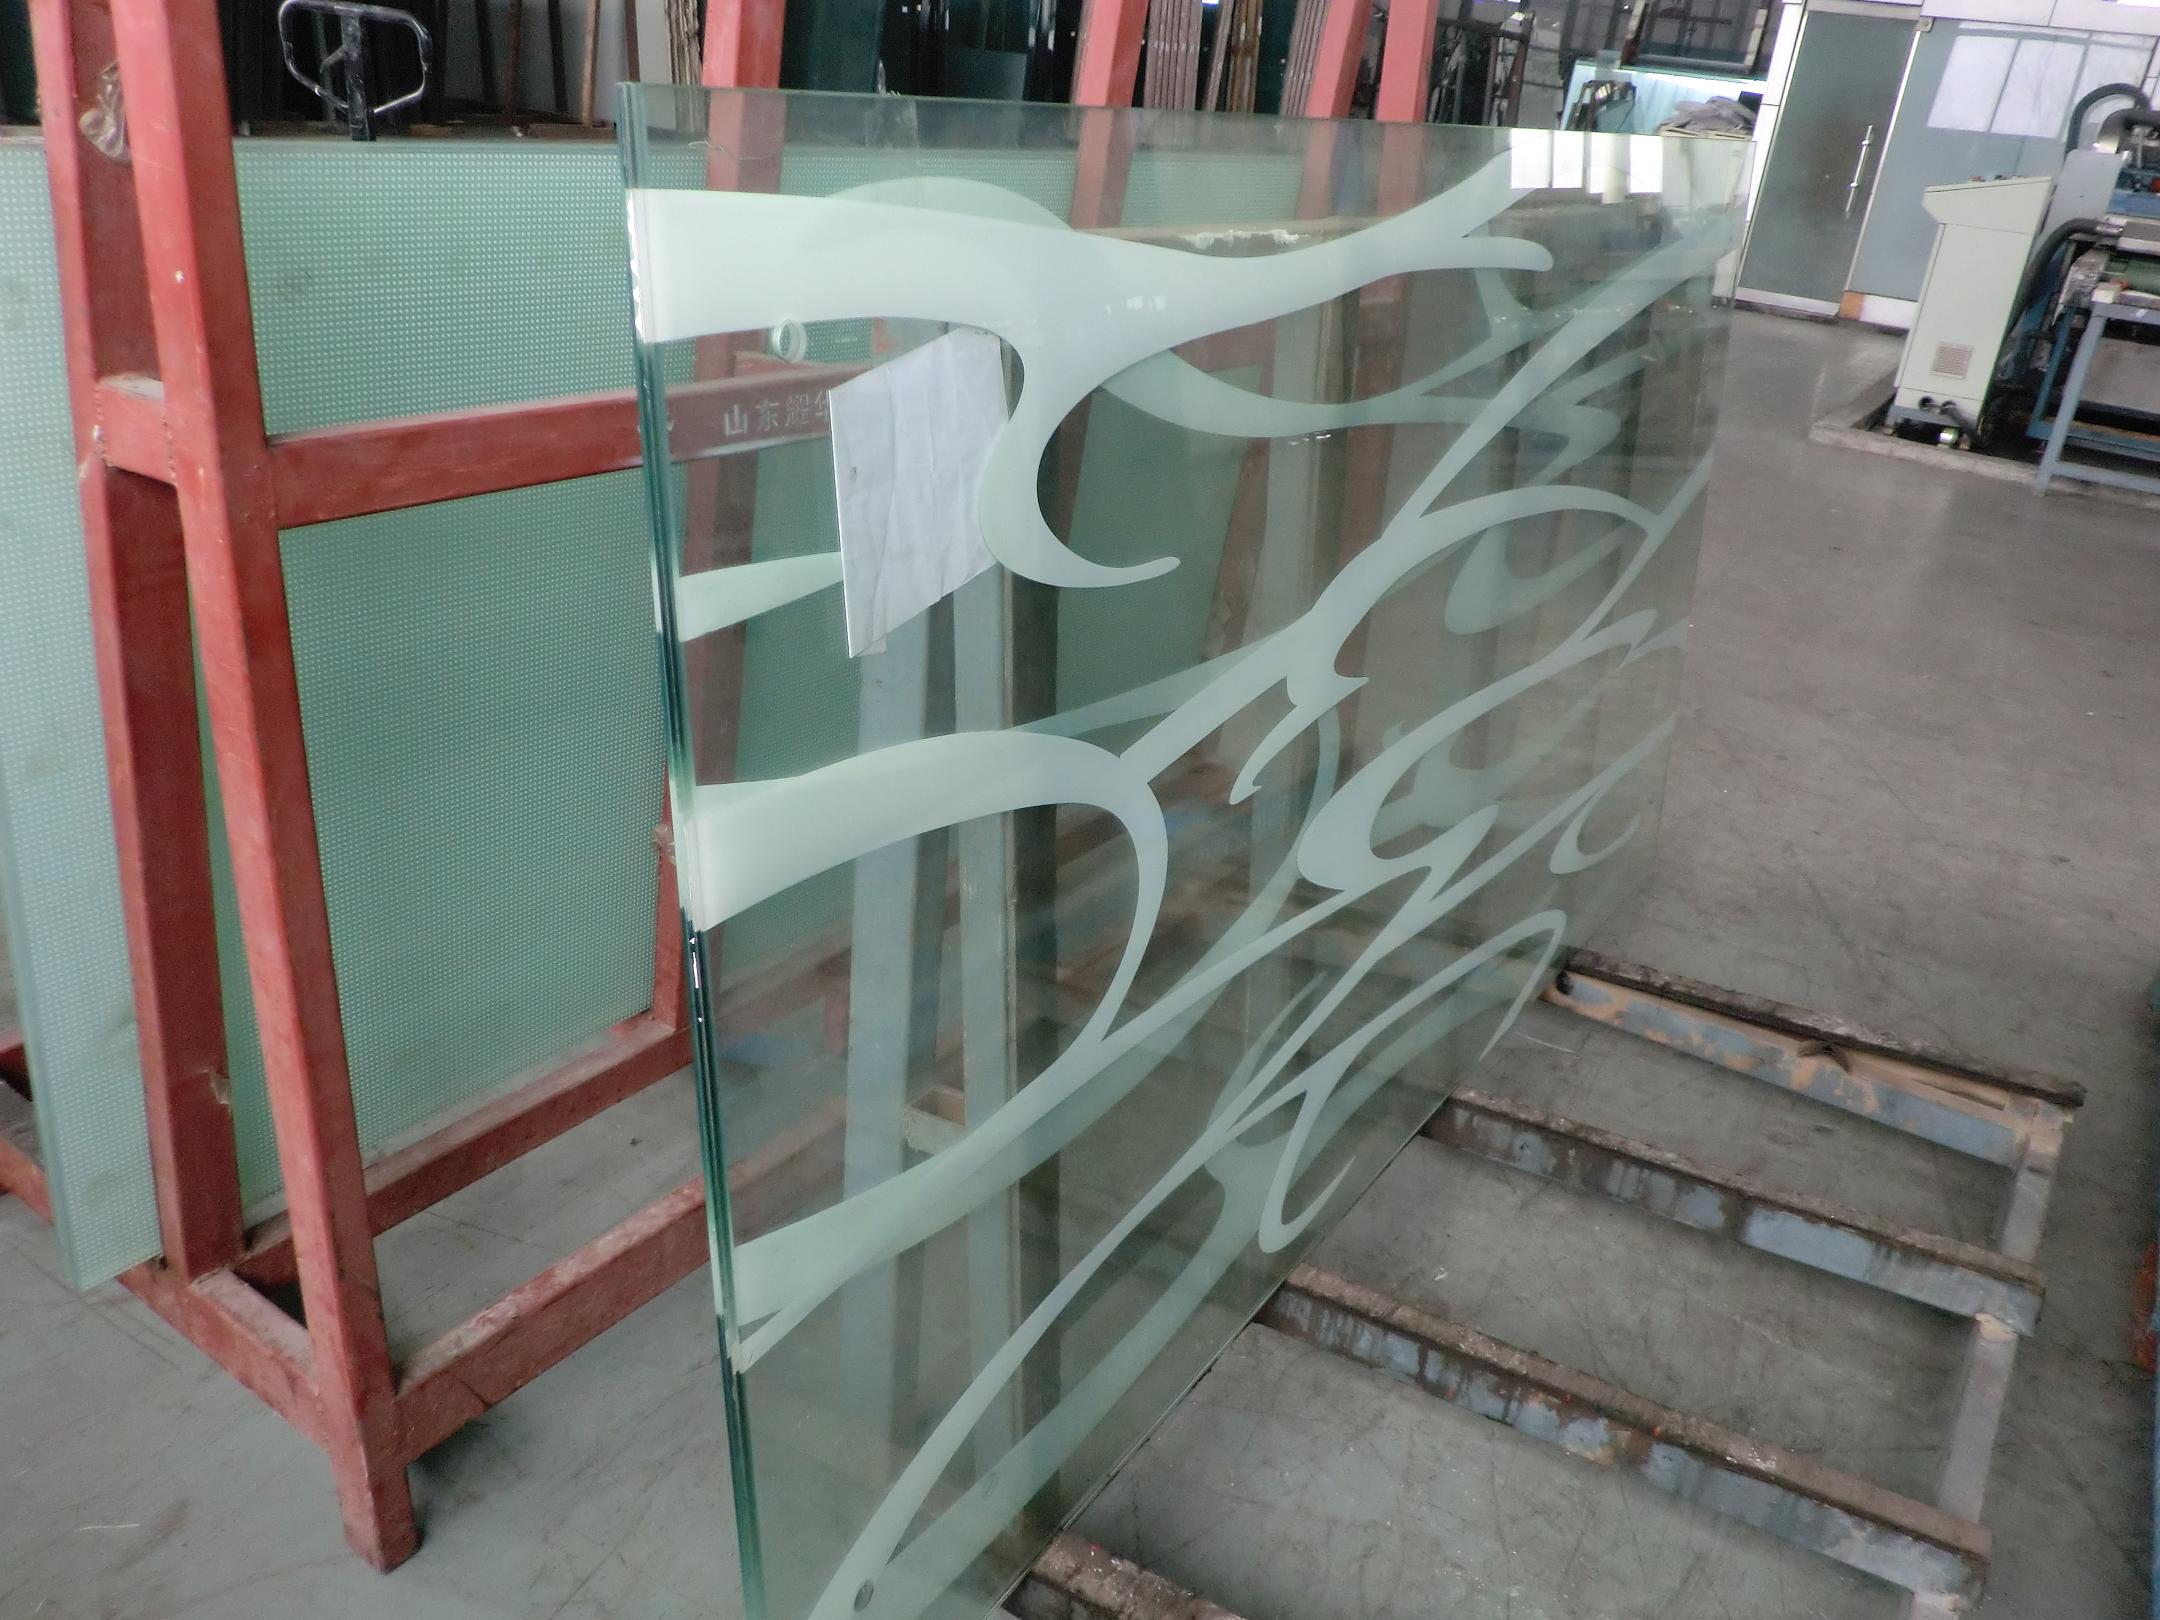 首页 产品供应 玻璃 装饰玻璃 丝印玻璃 > 供应丝网印刷玻璃